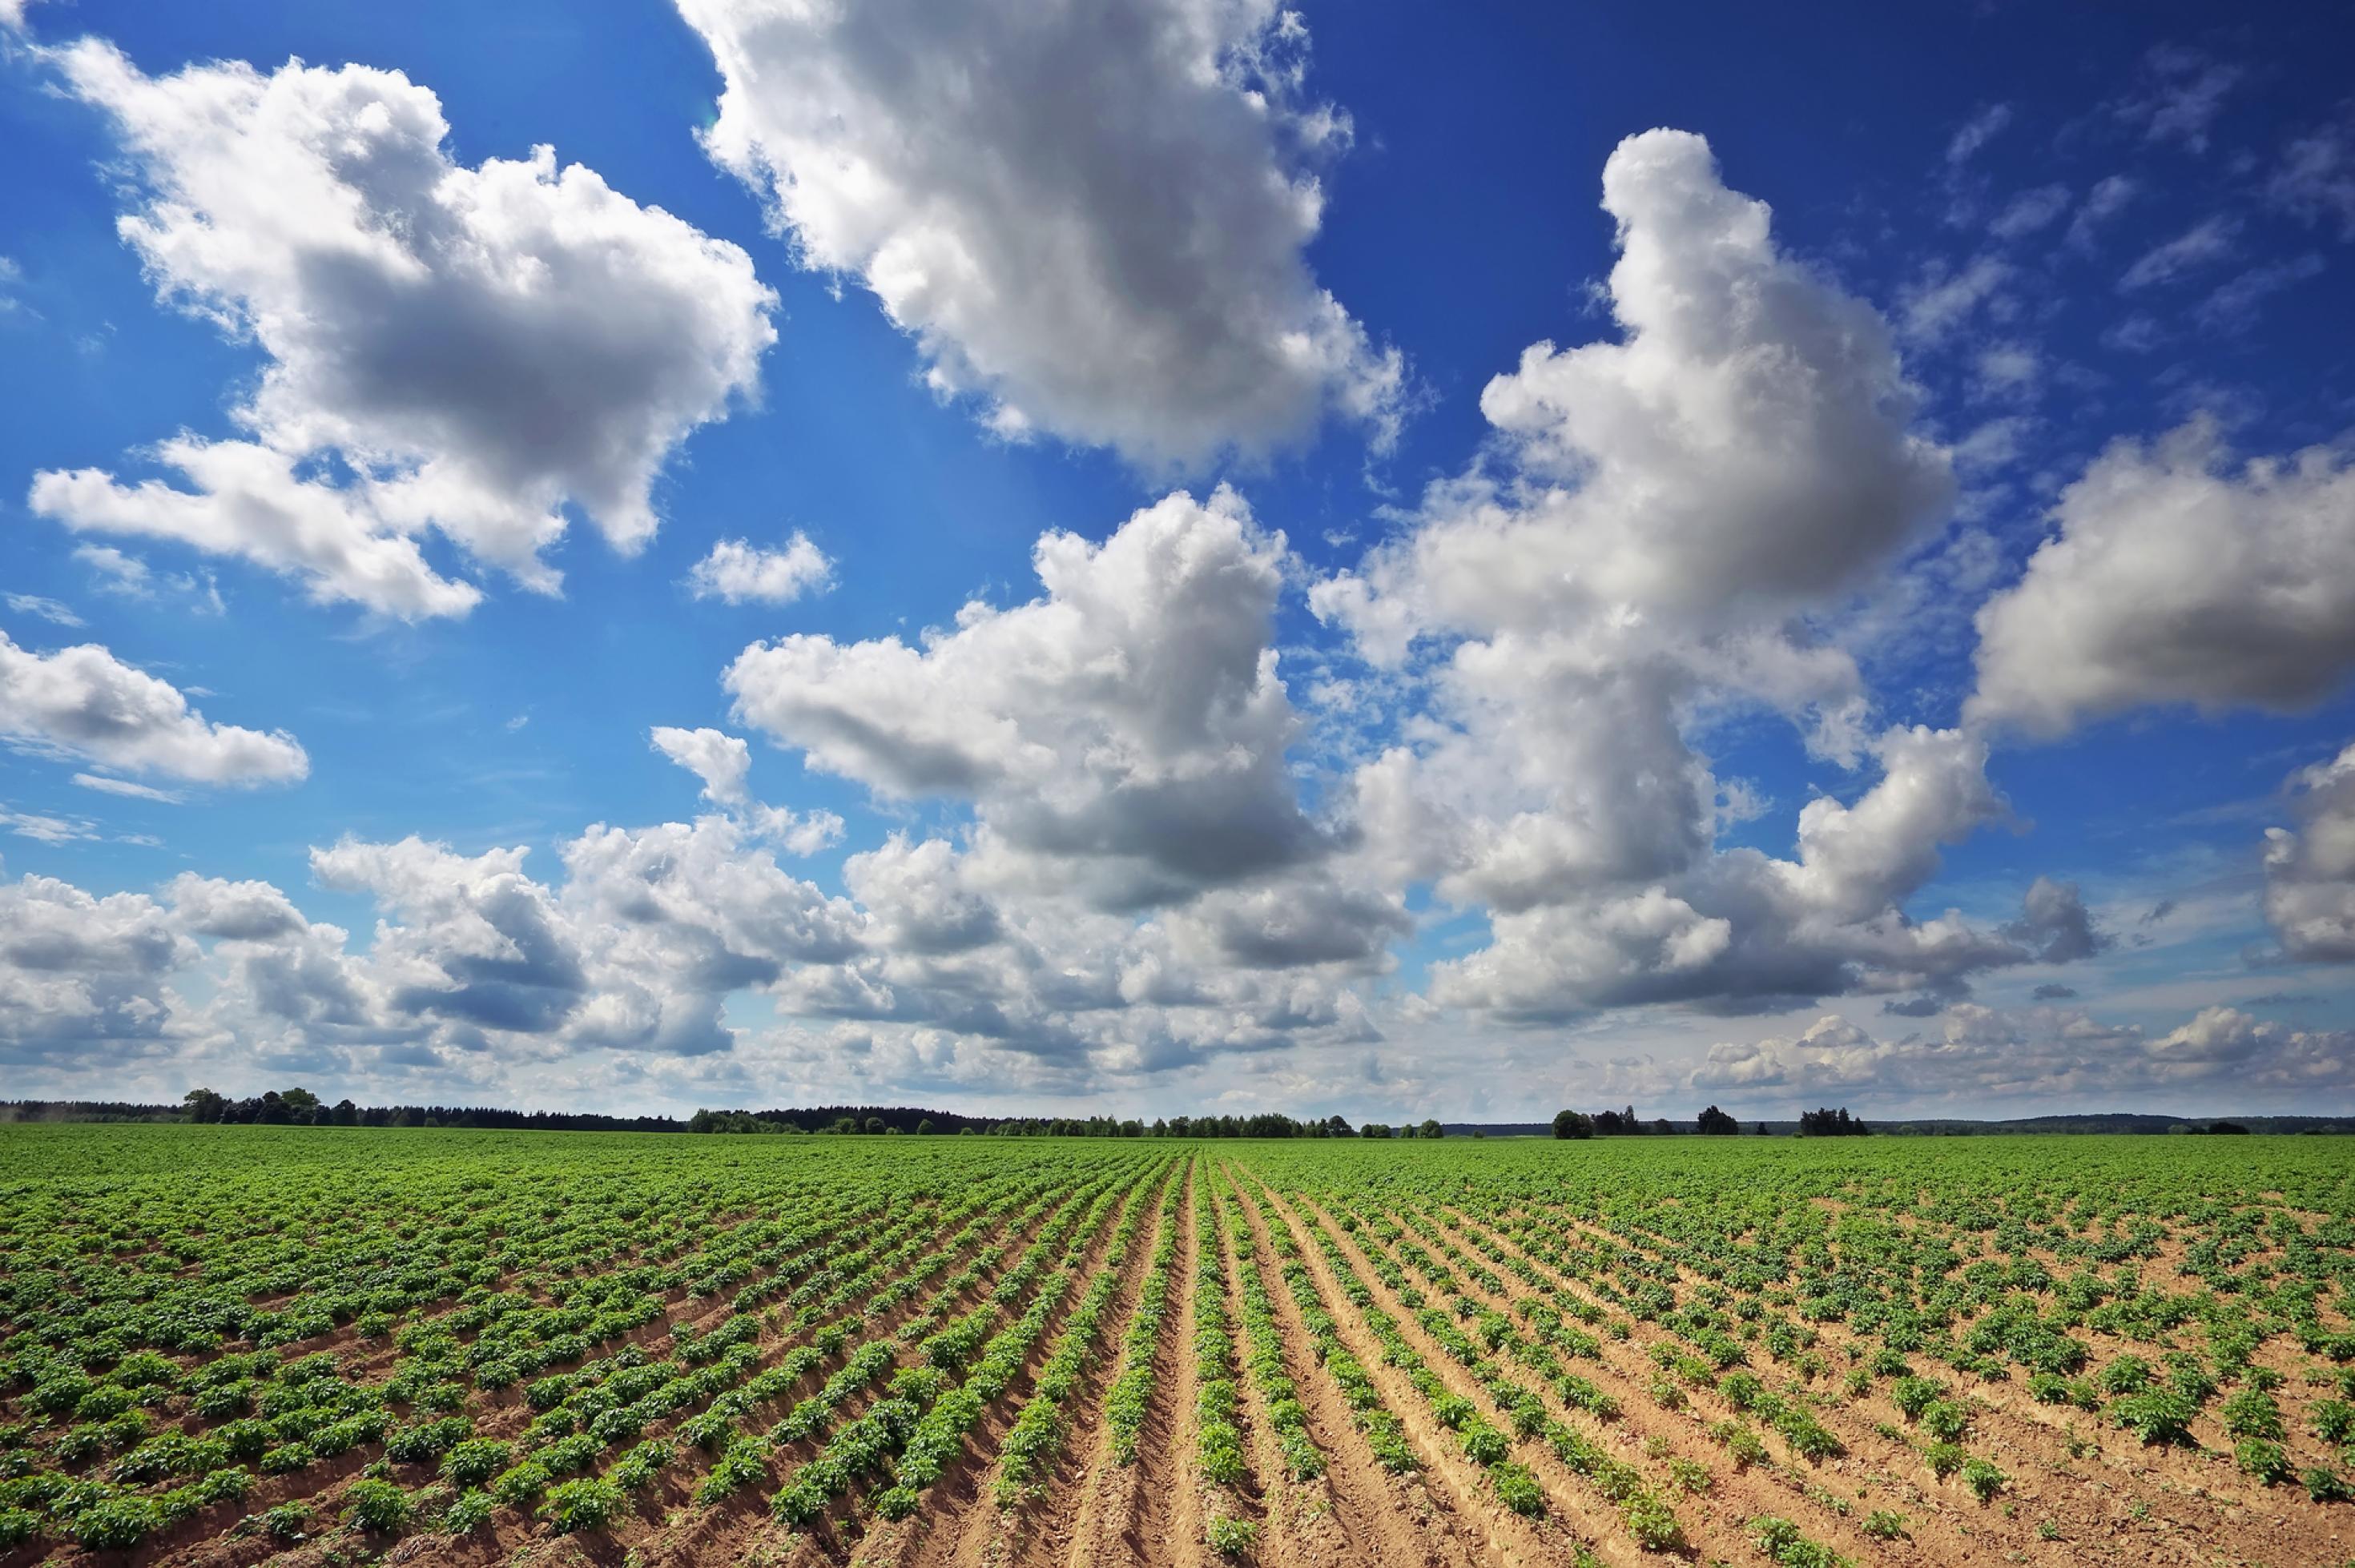 Riesiges Feld mit in Reihe gesetzten Kartoffelpflanzen, darüber ein blauer Himmel mit einzelnen Wolken